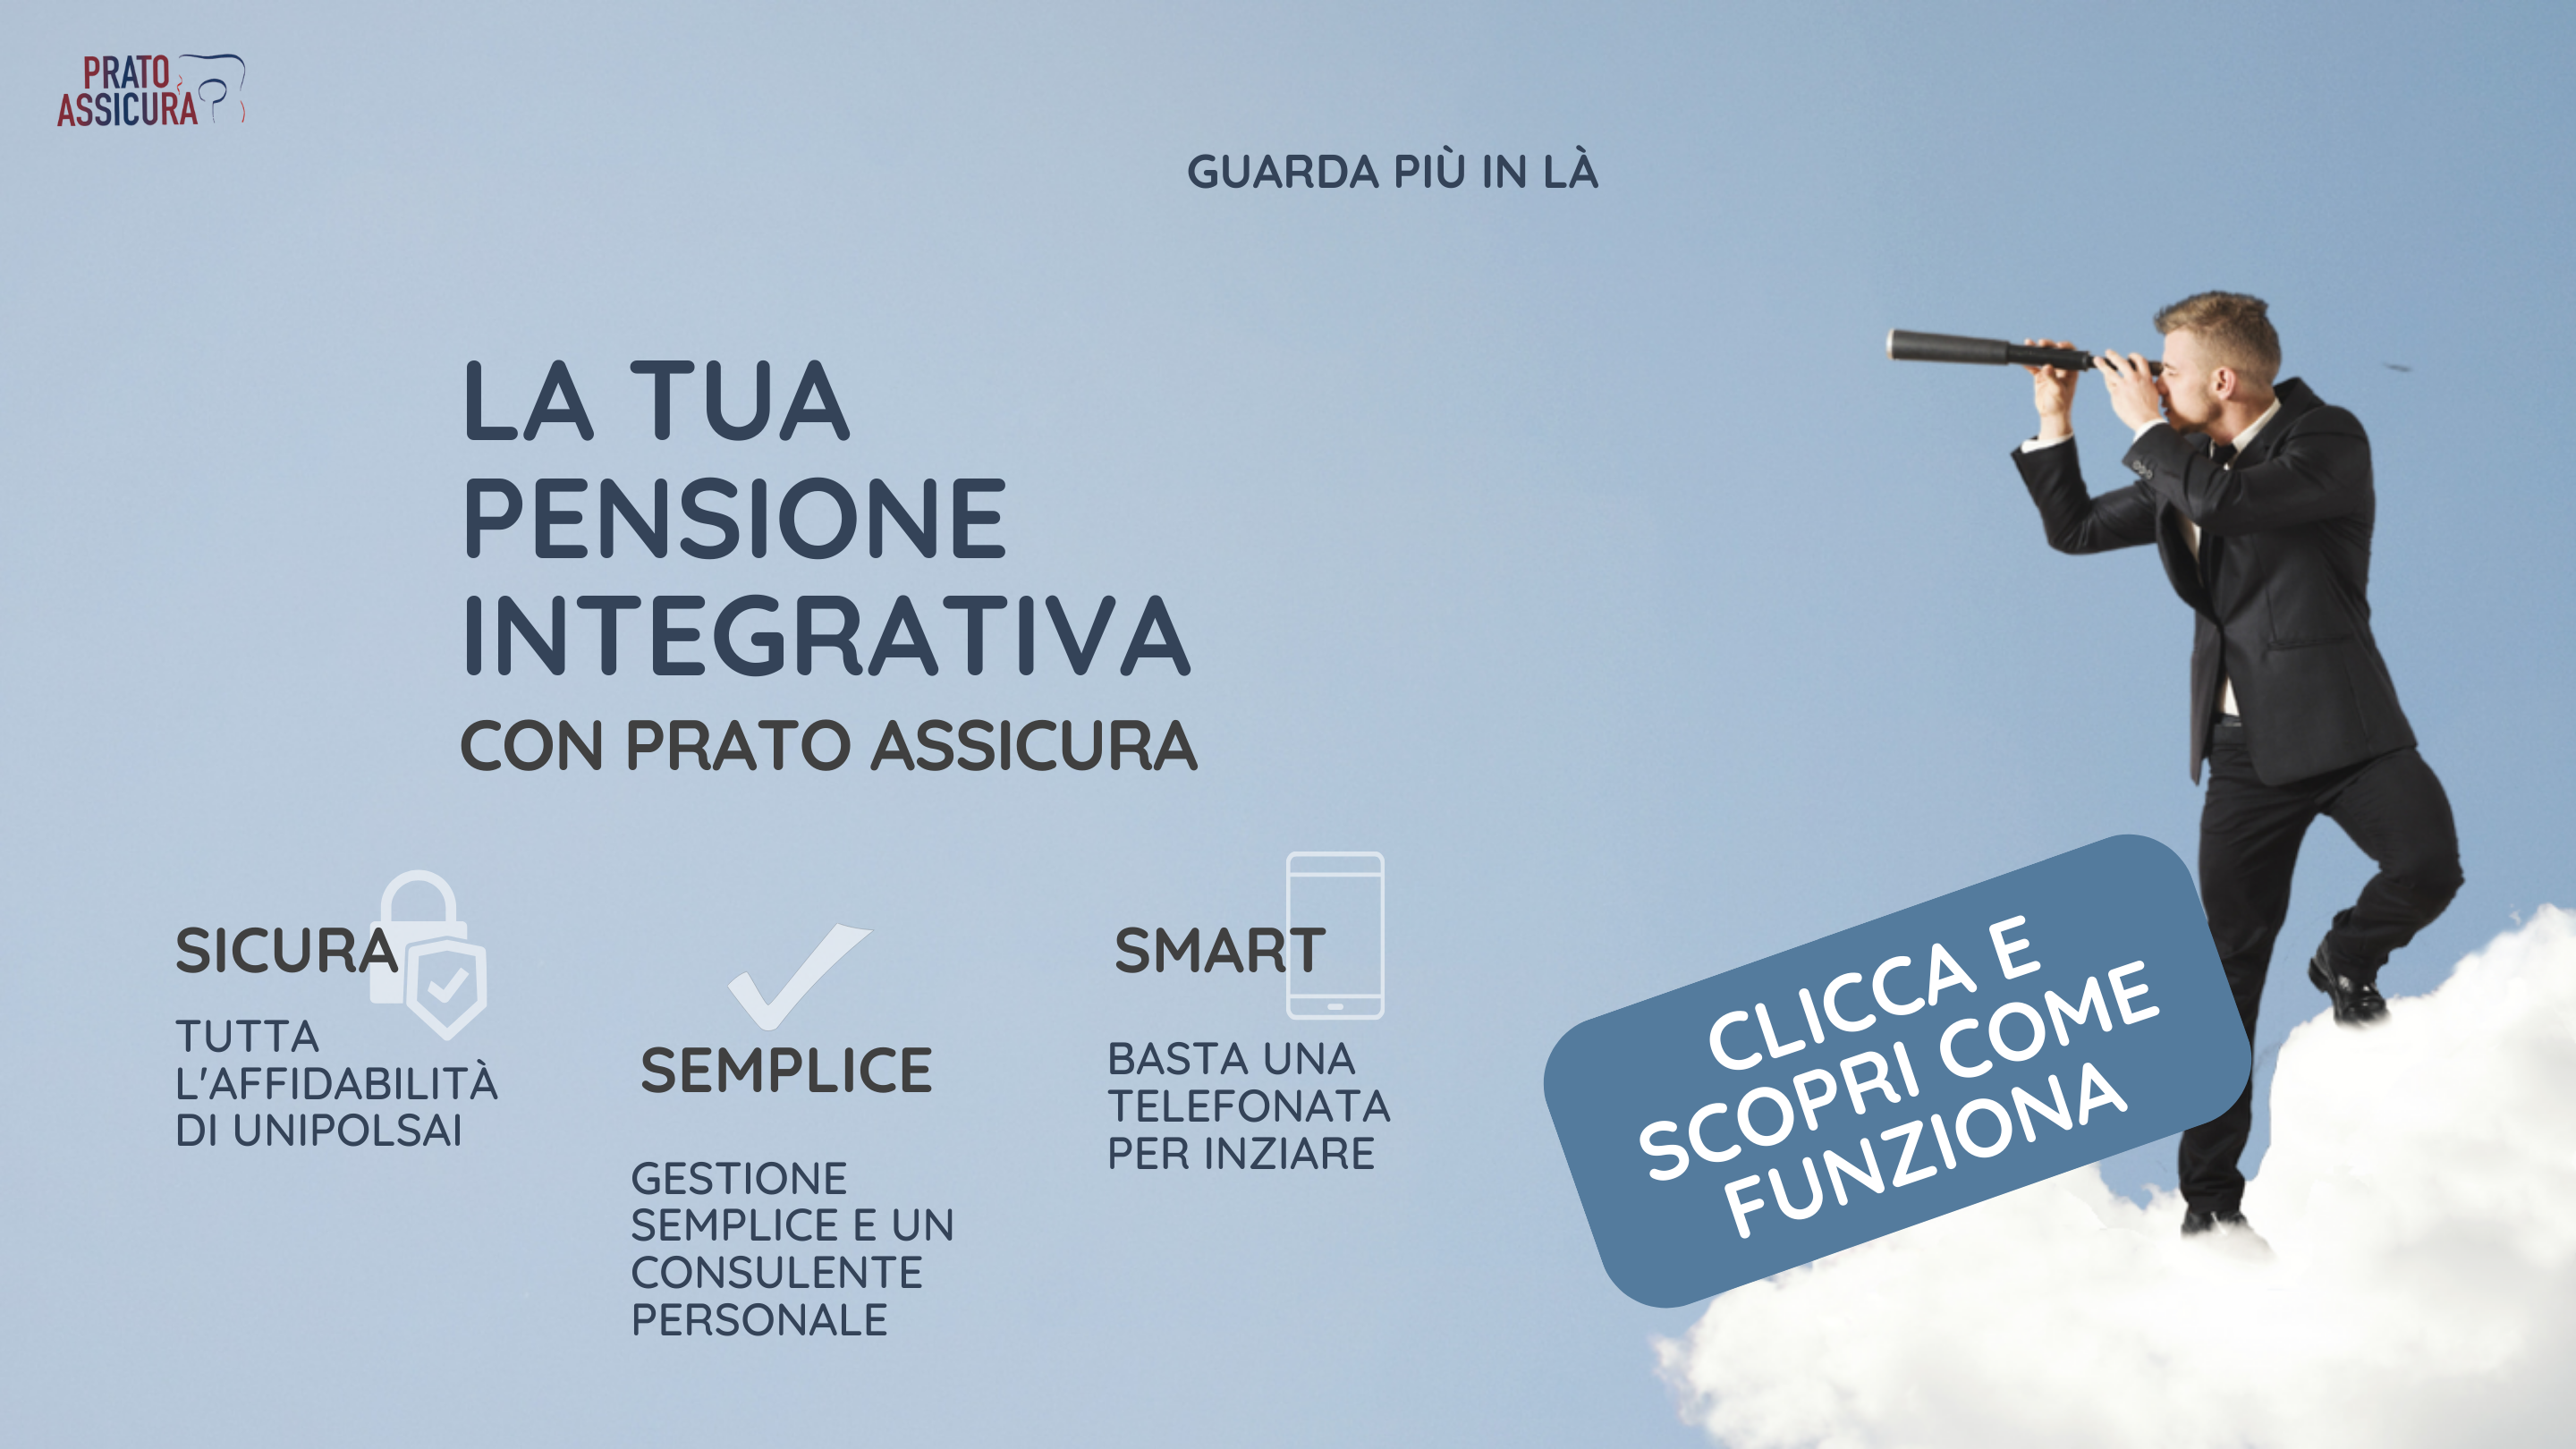 La tua pensione integrativa con Prato Assicura: sicura, semplice, smart.